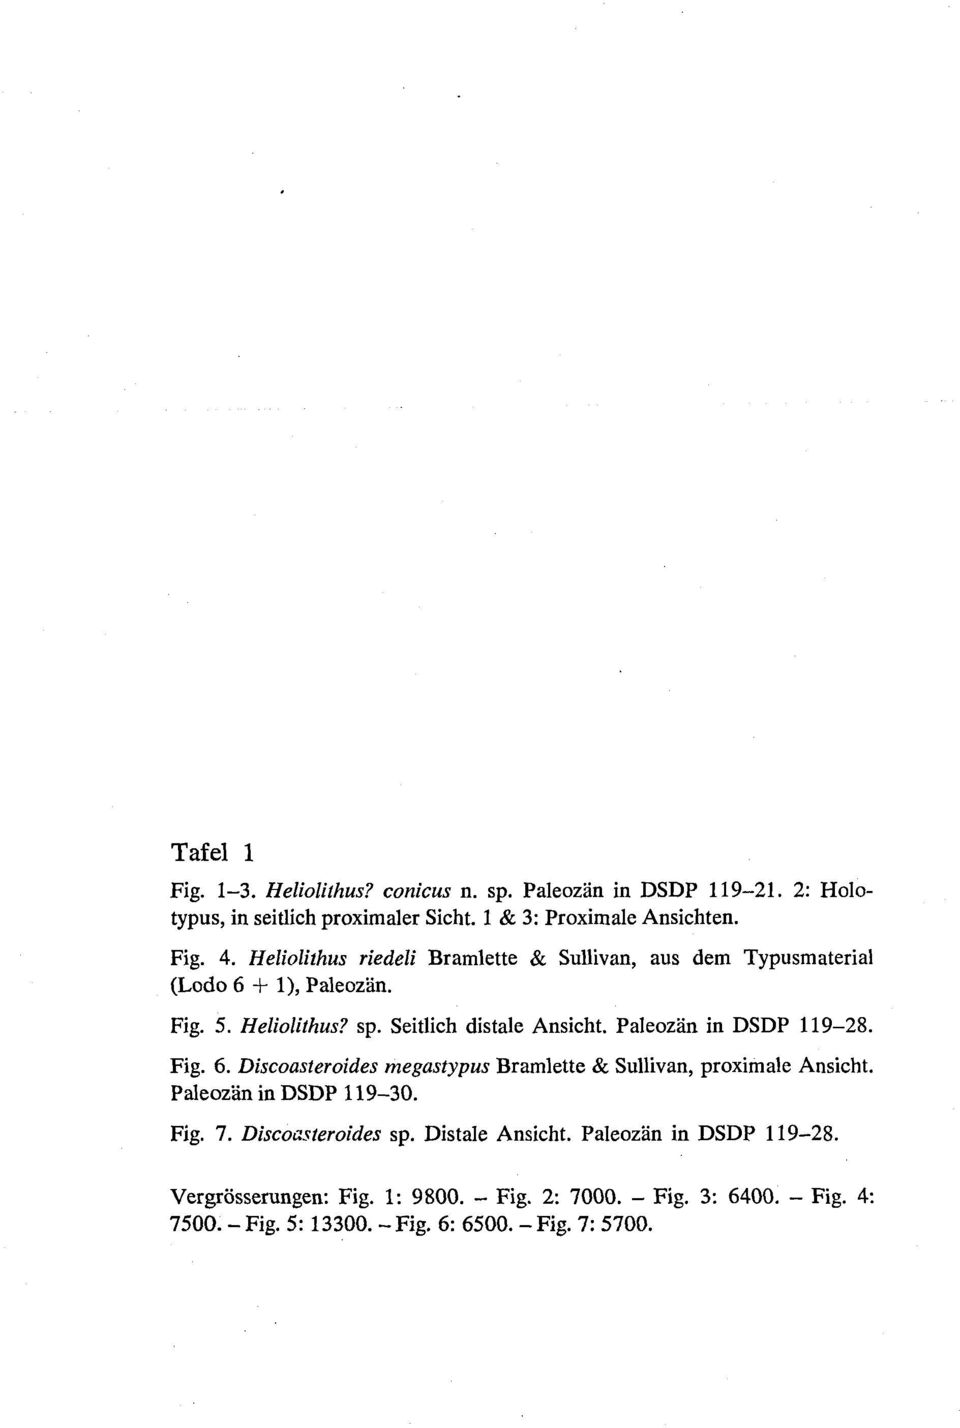 Paleozan in DSDP 119-28. Fig. 6. Discoasteroides megastypus Bramlette & Sullivan, proximale Ansicht. Paleozan in DSDP 119-30. Fig. 7. Discoasteroides sp.